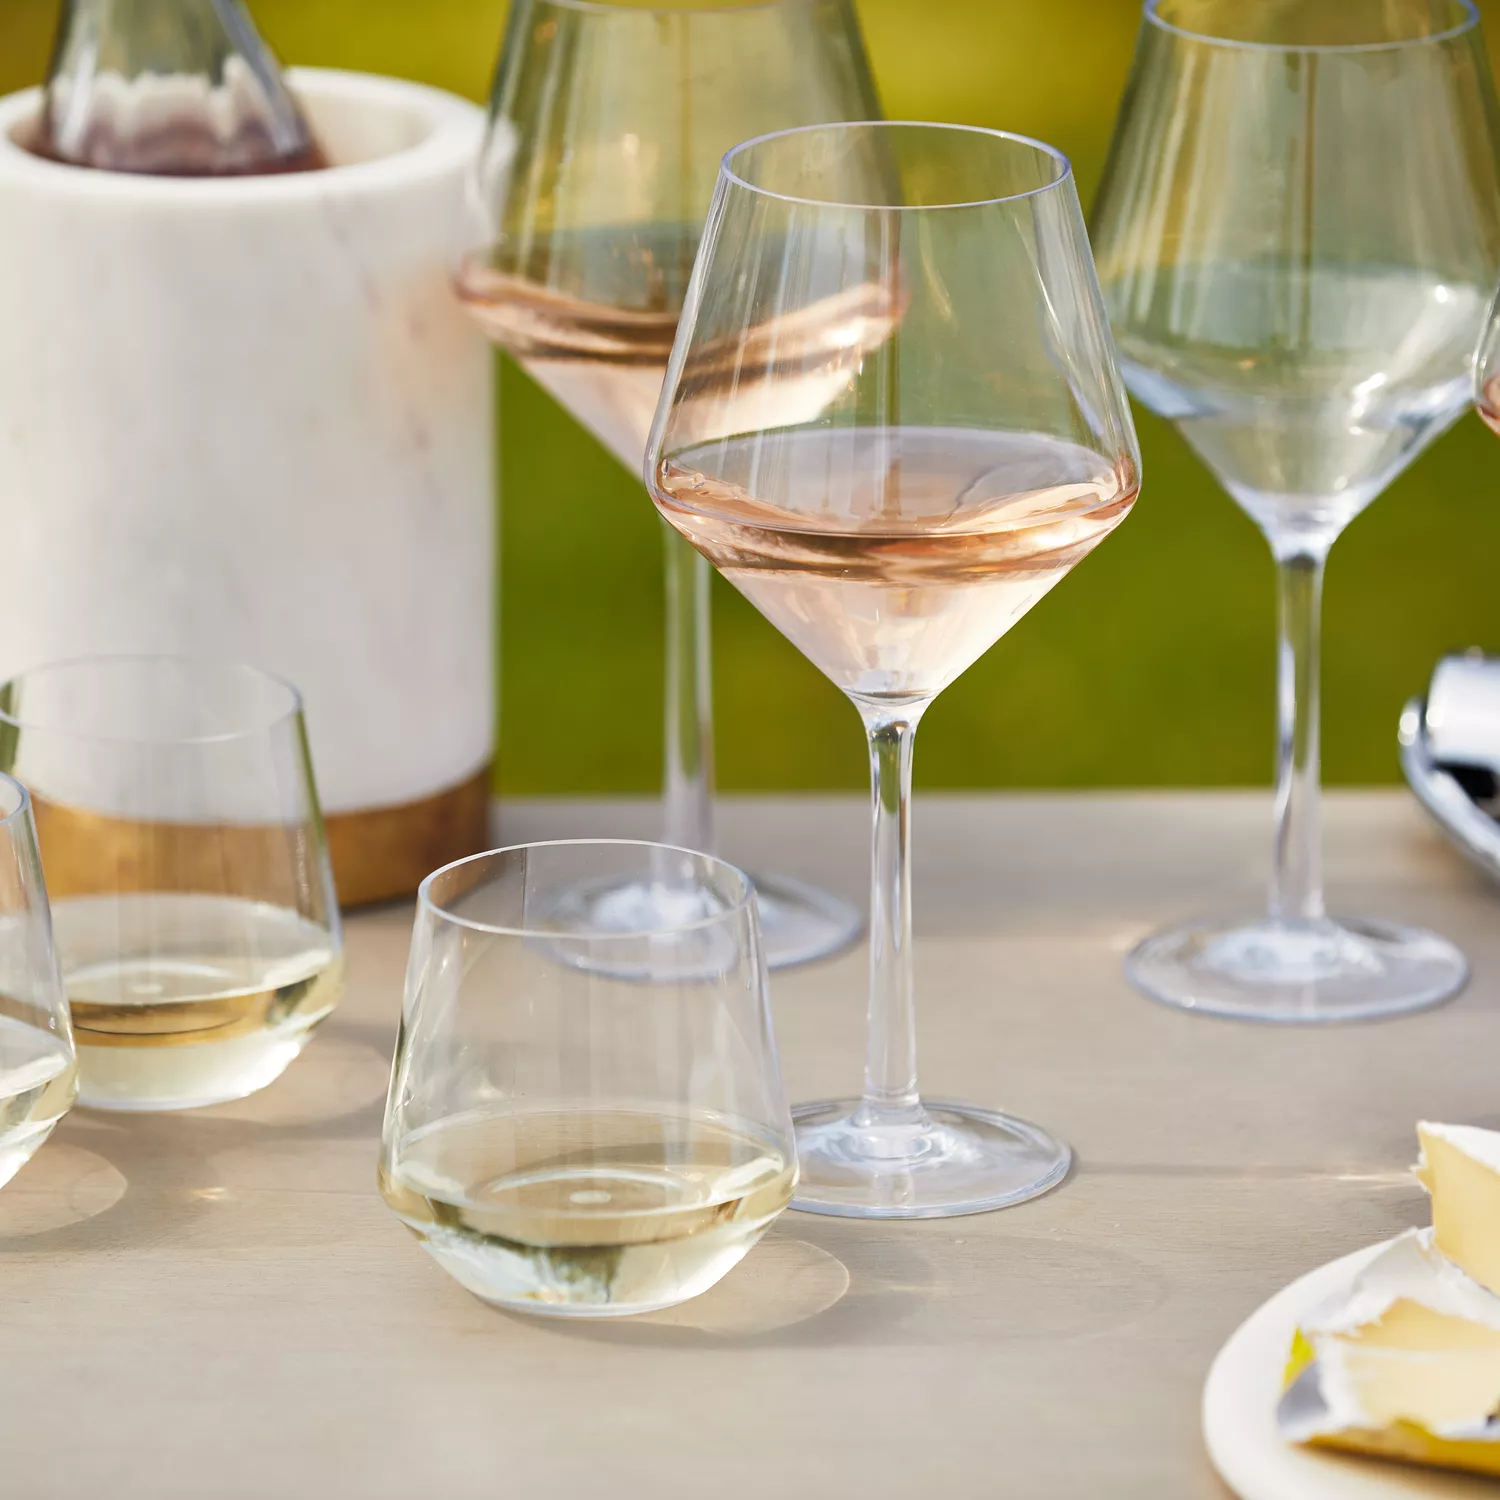 Sur La Table Outdoor Wine Glasses, Set of 4